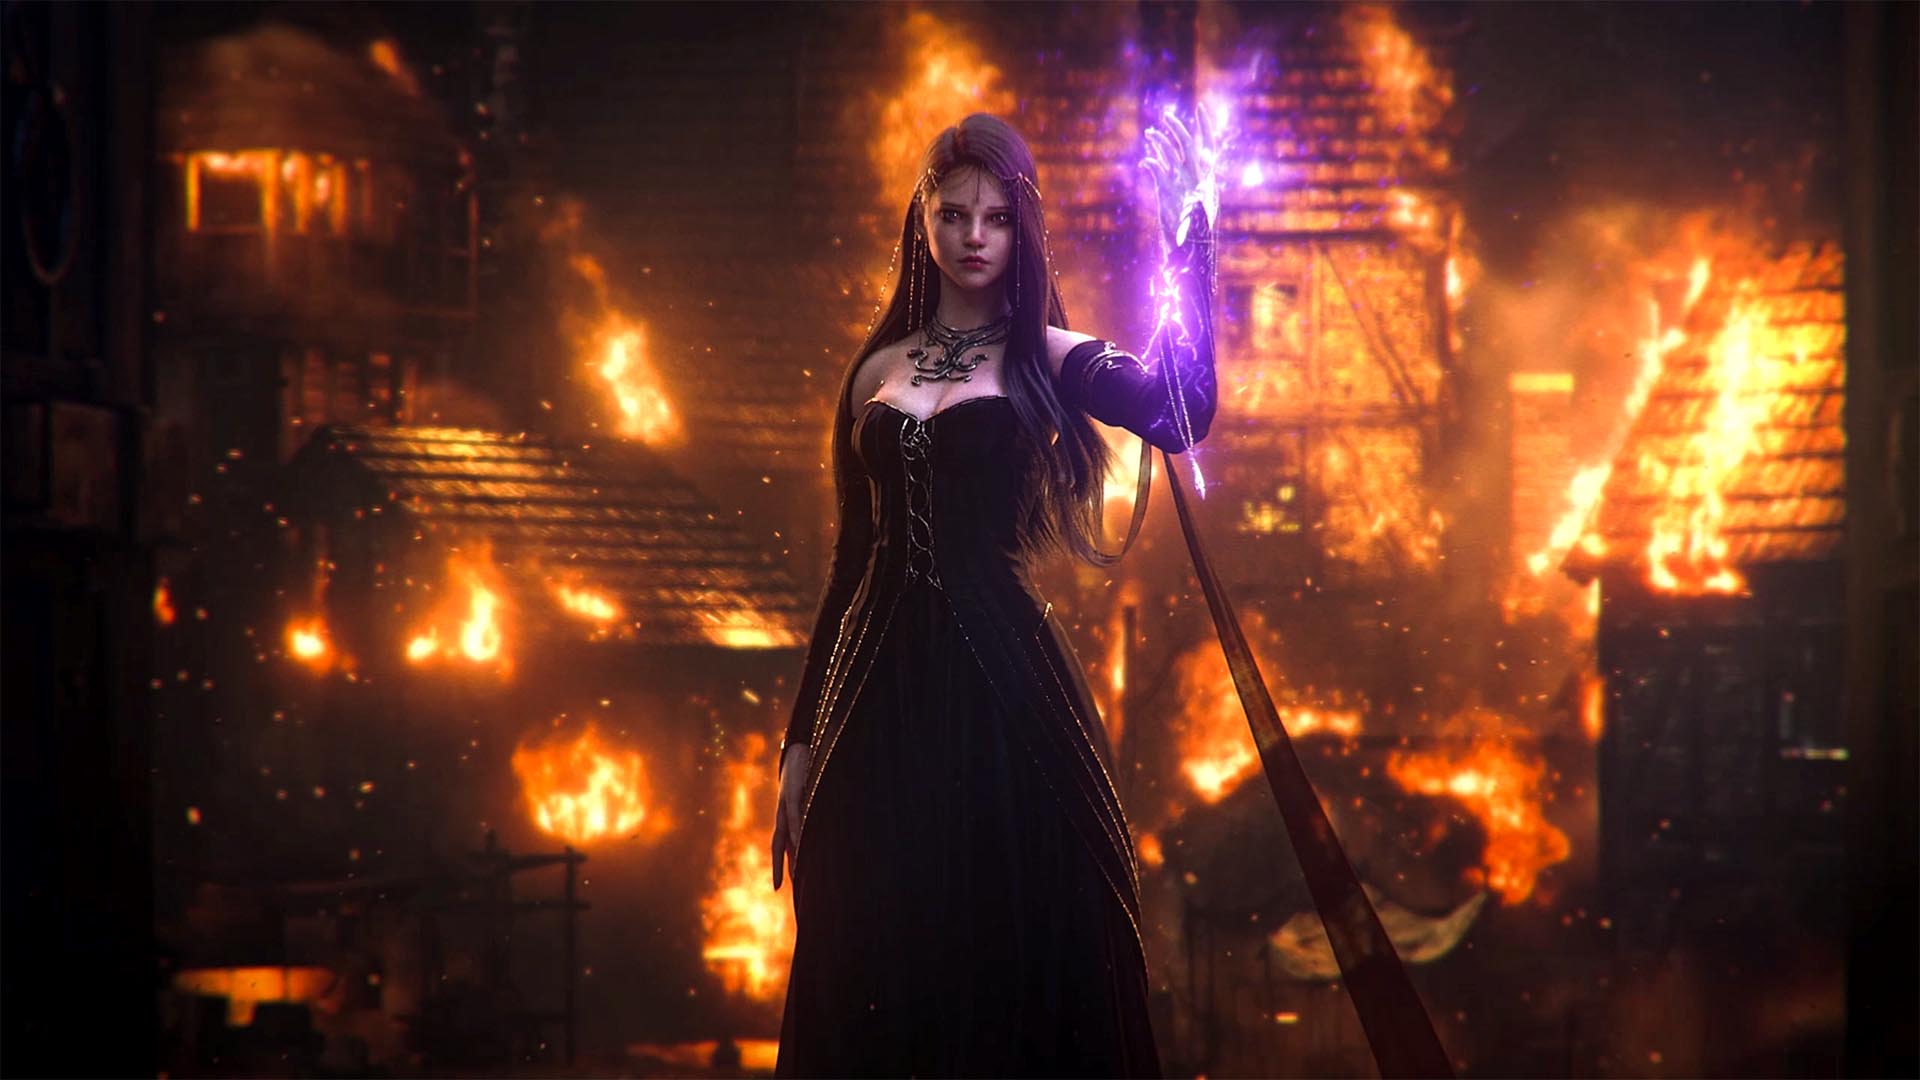 A personagem Calanthia com cabelos longos e escuros e usando um vestido preto. Um brilho roxo emana de sua mão enquanto uma cidade queima atrás dela.